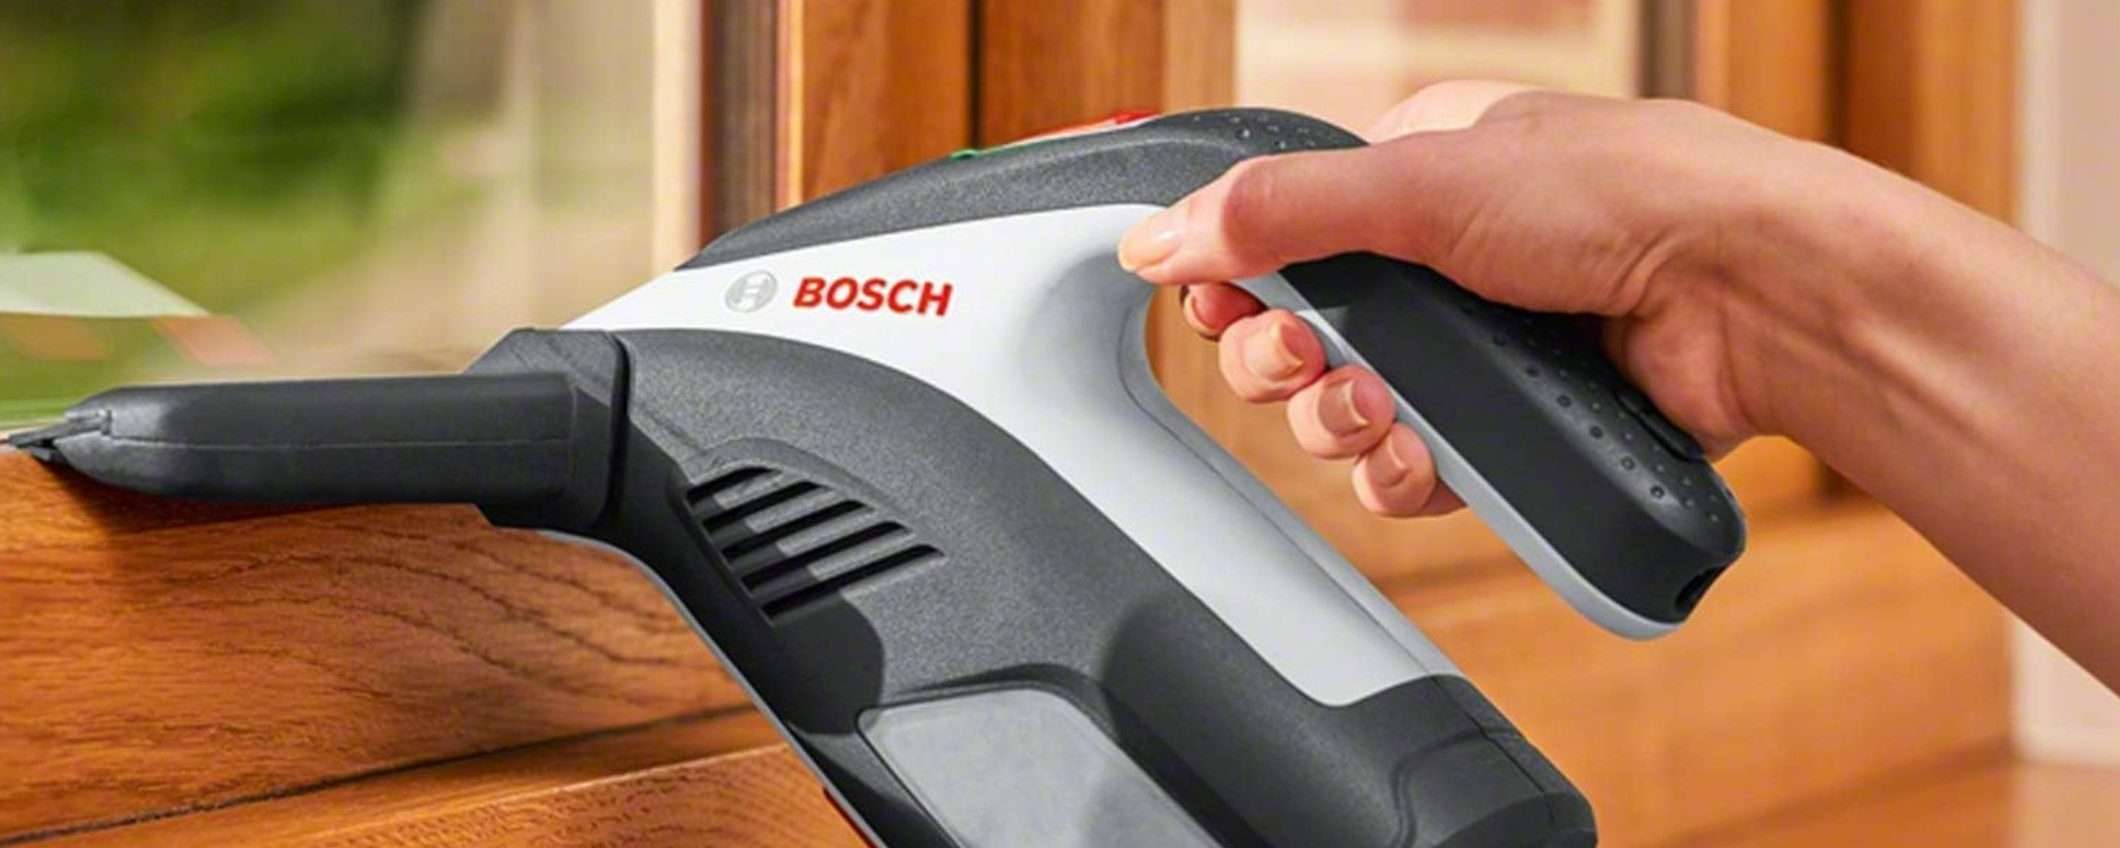 Bosch: il MITICO lavavetri elettrico CROLLA di prezzo su Amazon: sconto 42%